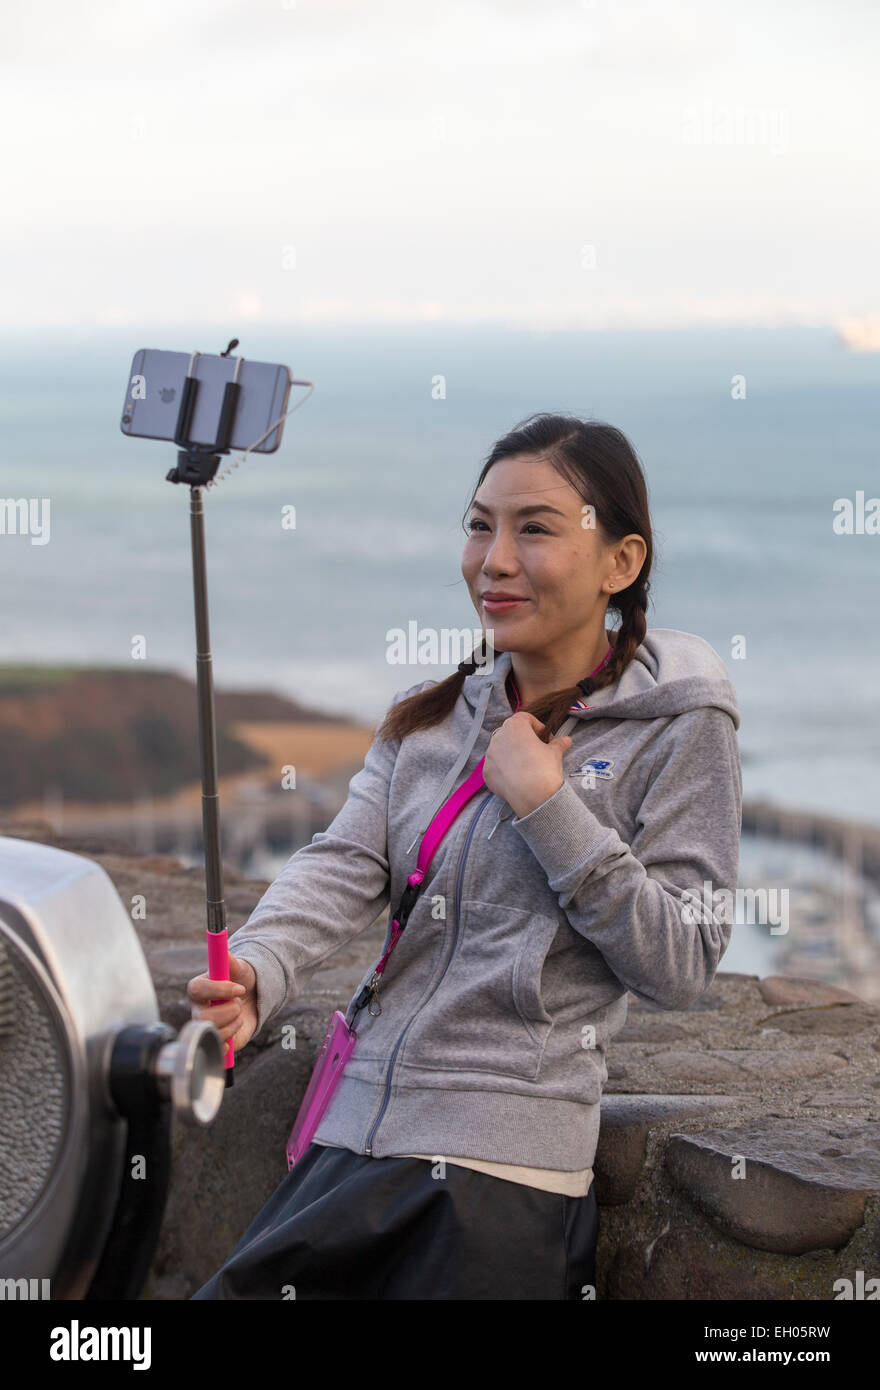 Asiatische Frau, selfie Stick, wobei selfie selfie, Foto, Vista Point, nördlich der Golden Gate Bridge, Stadt Sausalito, Sausalito, Kalifornien Stockfoto